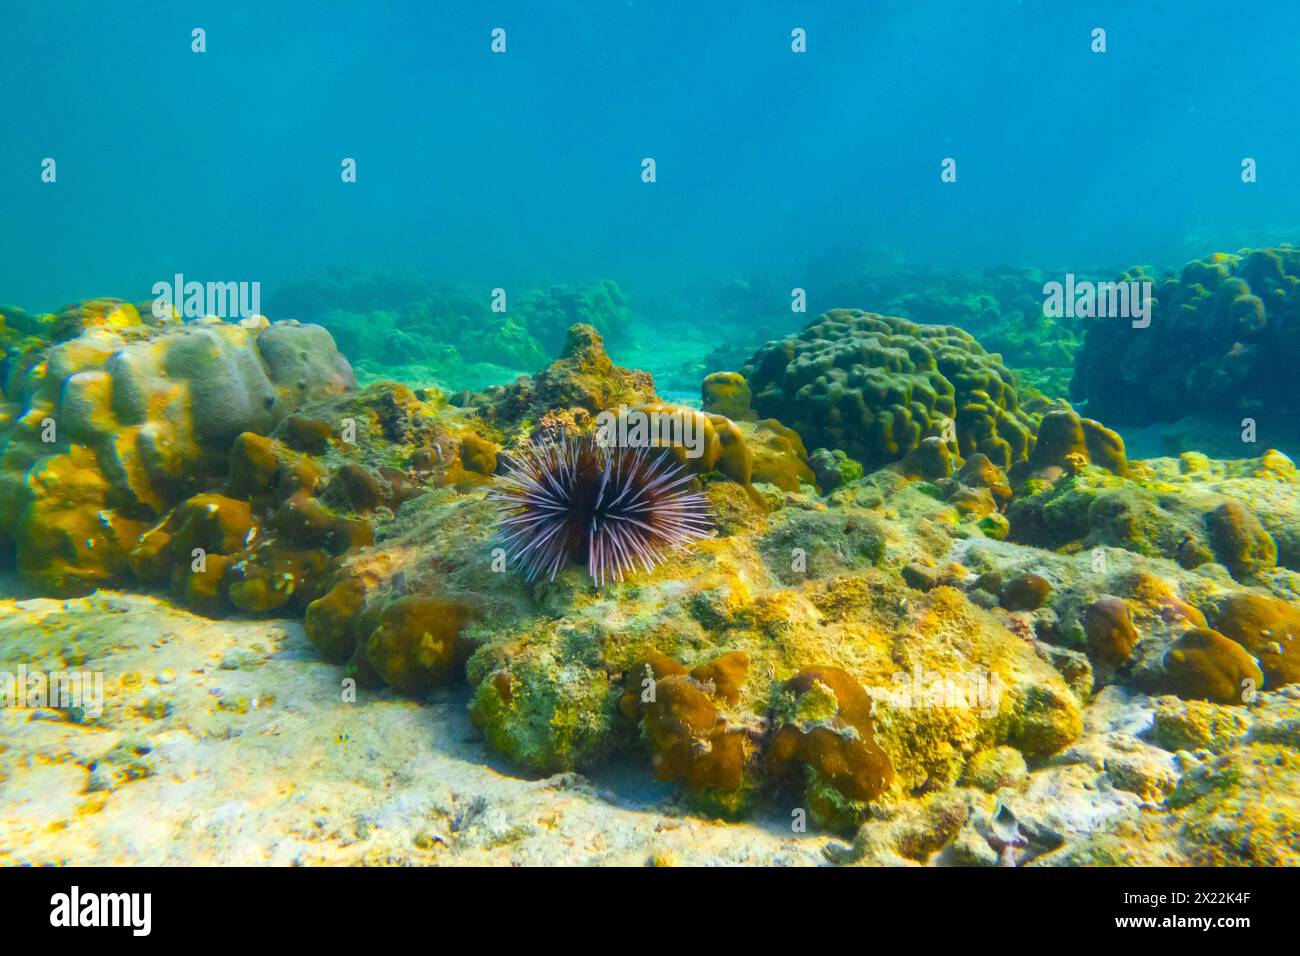 Diversi ricci di mare con spine bianche e nere spostano le loro spine fondendosi in un grumo sul fondo delle calde acque tropicali della barriera corallina Foto Stock